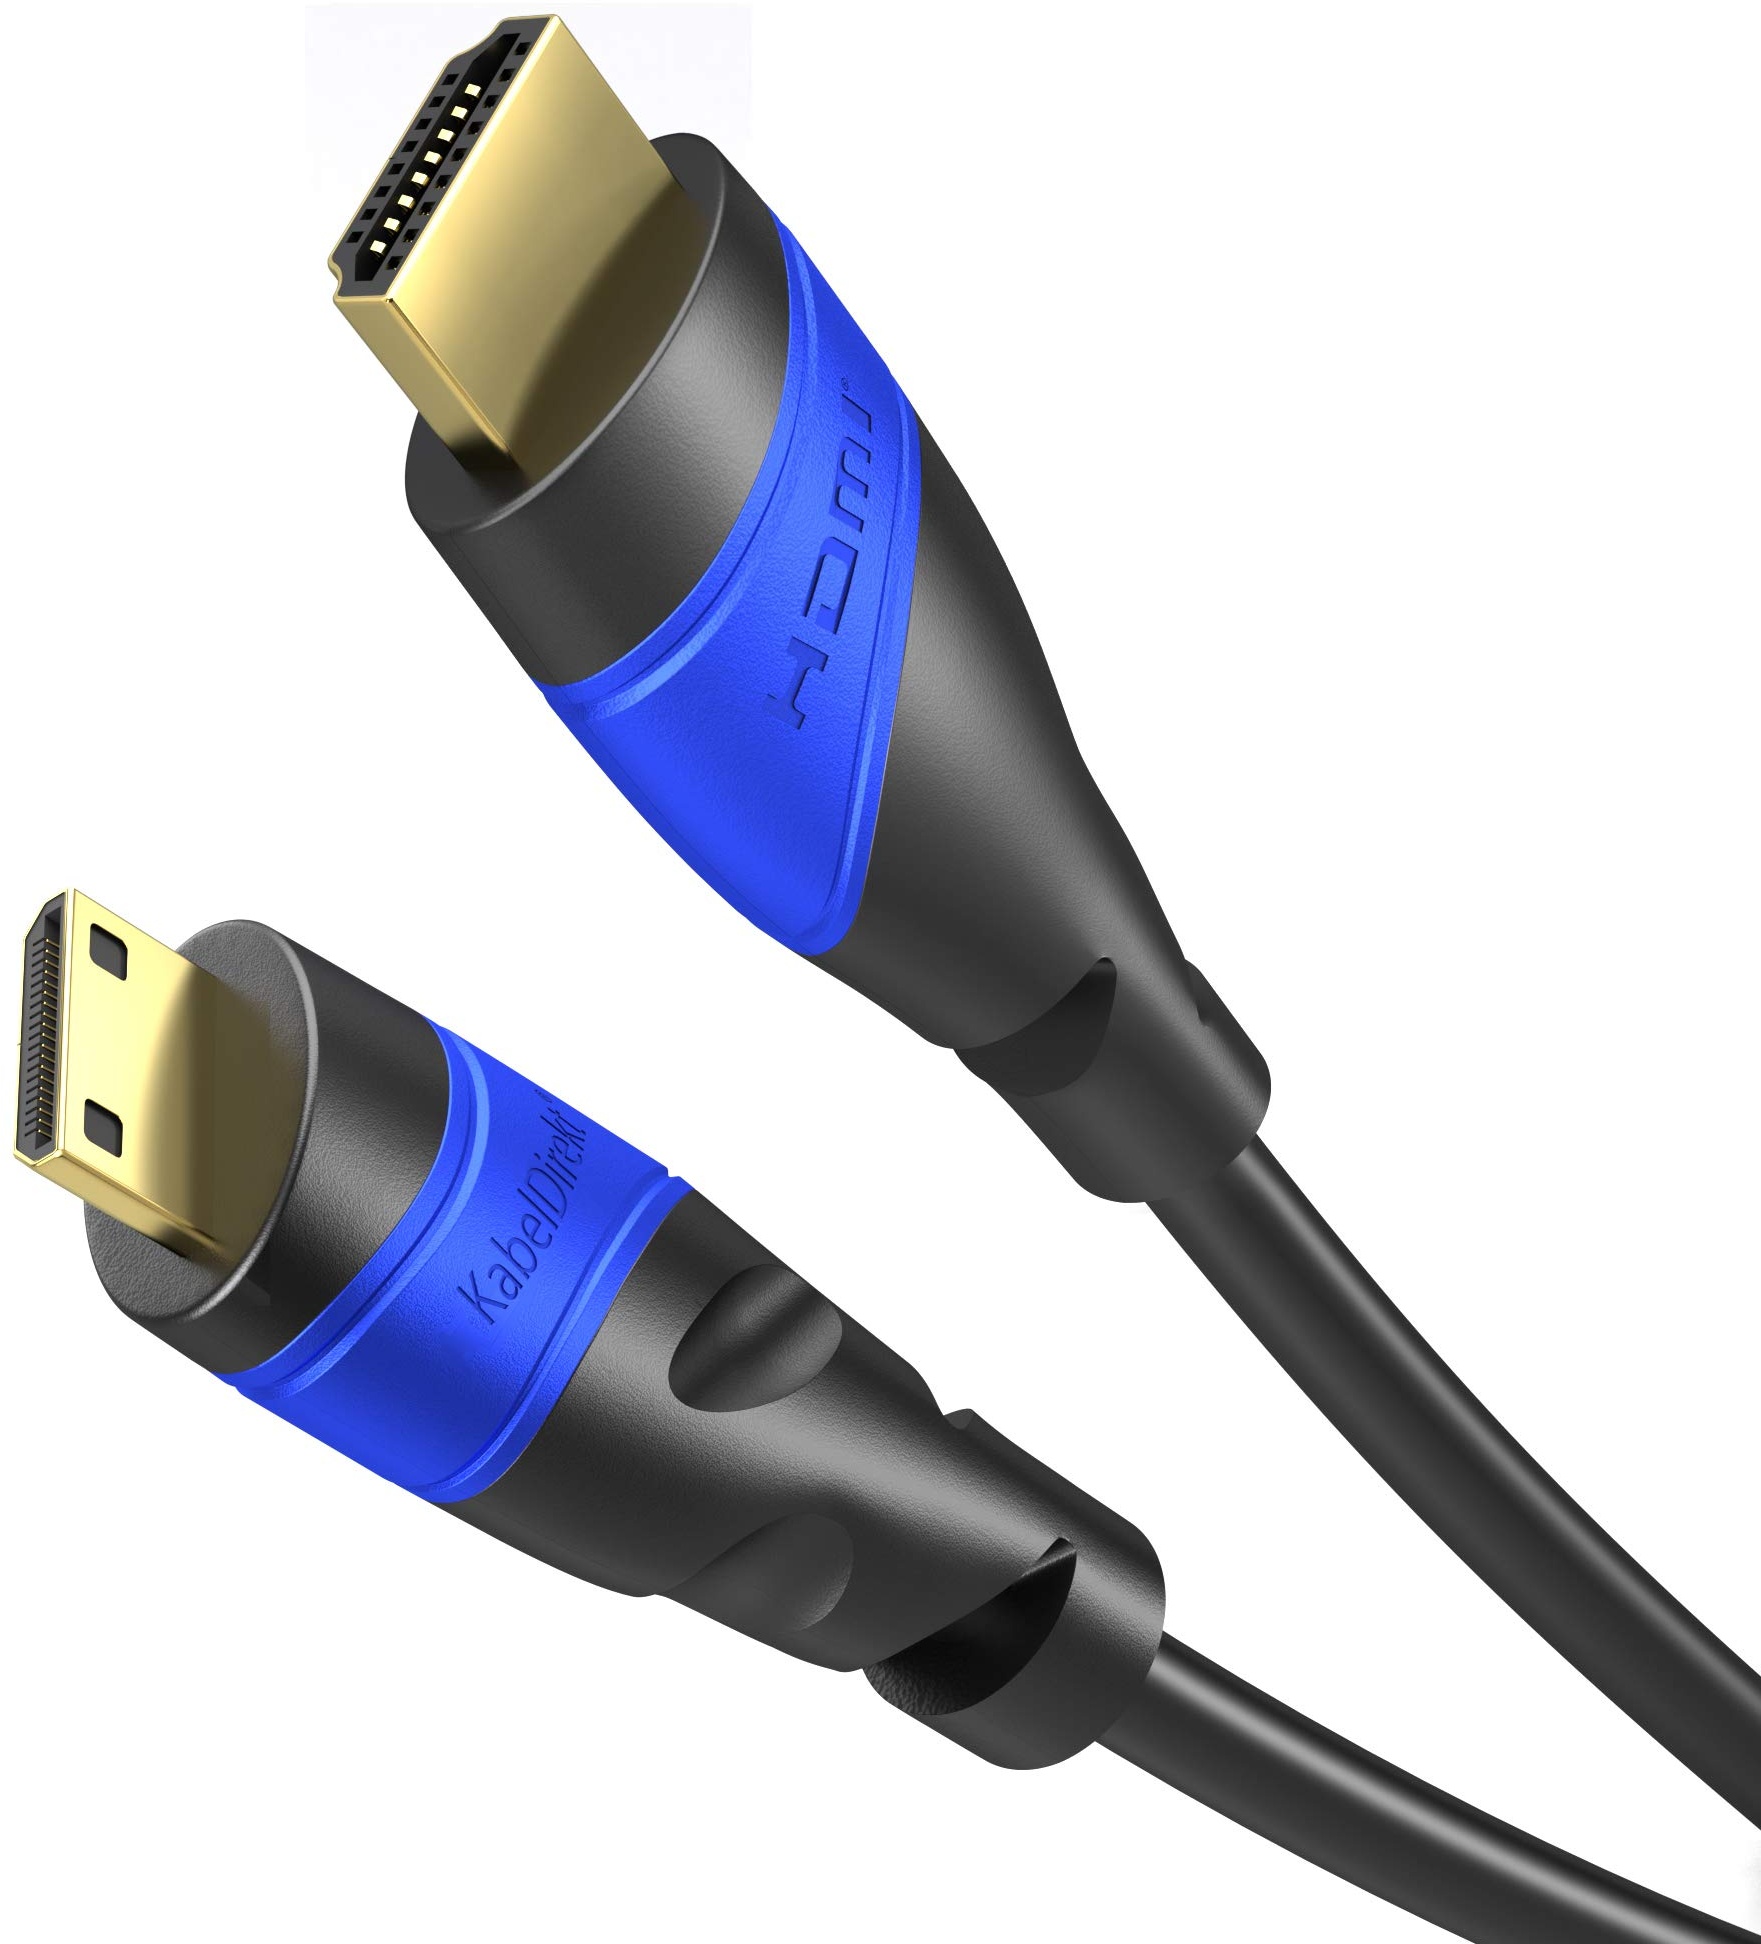 KabelDirekt – Mini-HDMI-Kabel, bruchfest konstruiert – 3m (HDMI zu Mini-HDMI, bidirektional, 4K@60Hz für Ultra HD, HDMI 2.0/1.4, High Speed mit Ethernet, für Tablets/Kameras/Camcorder, schwarz)